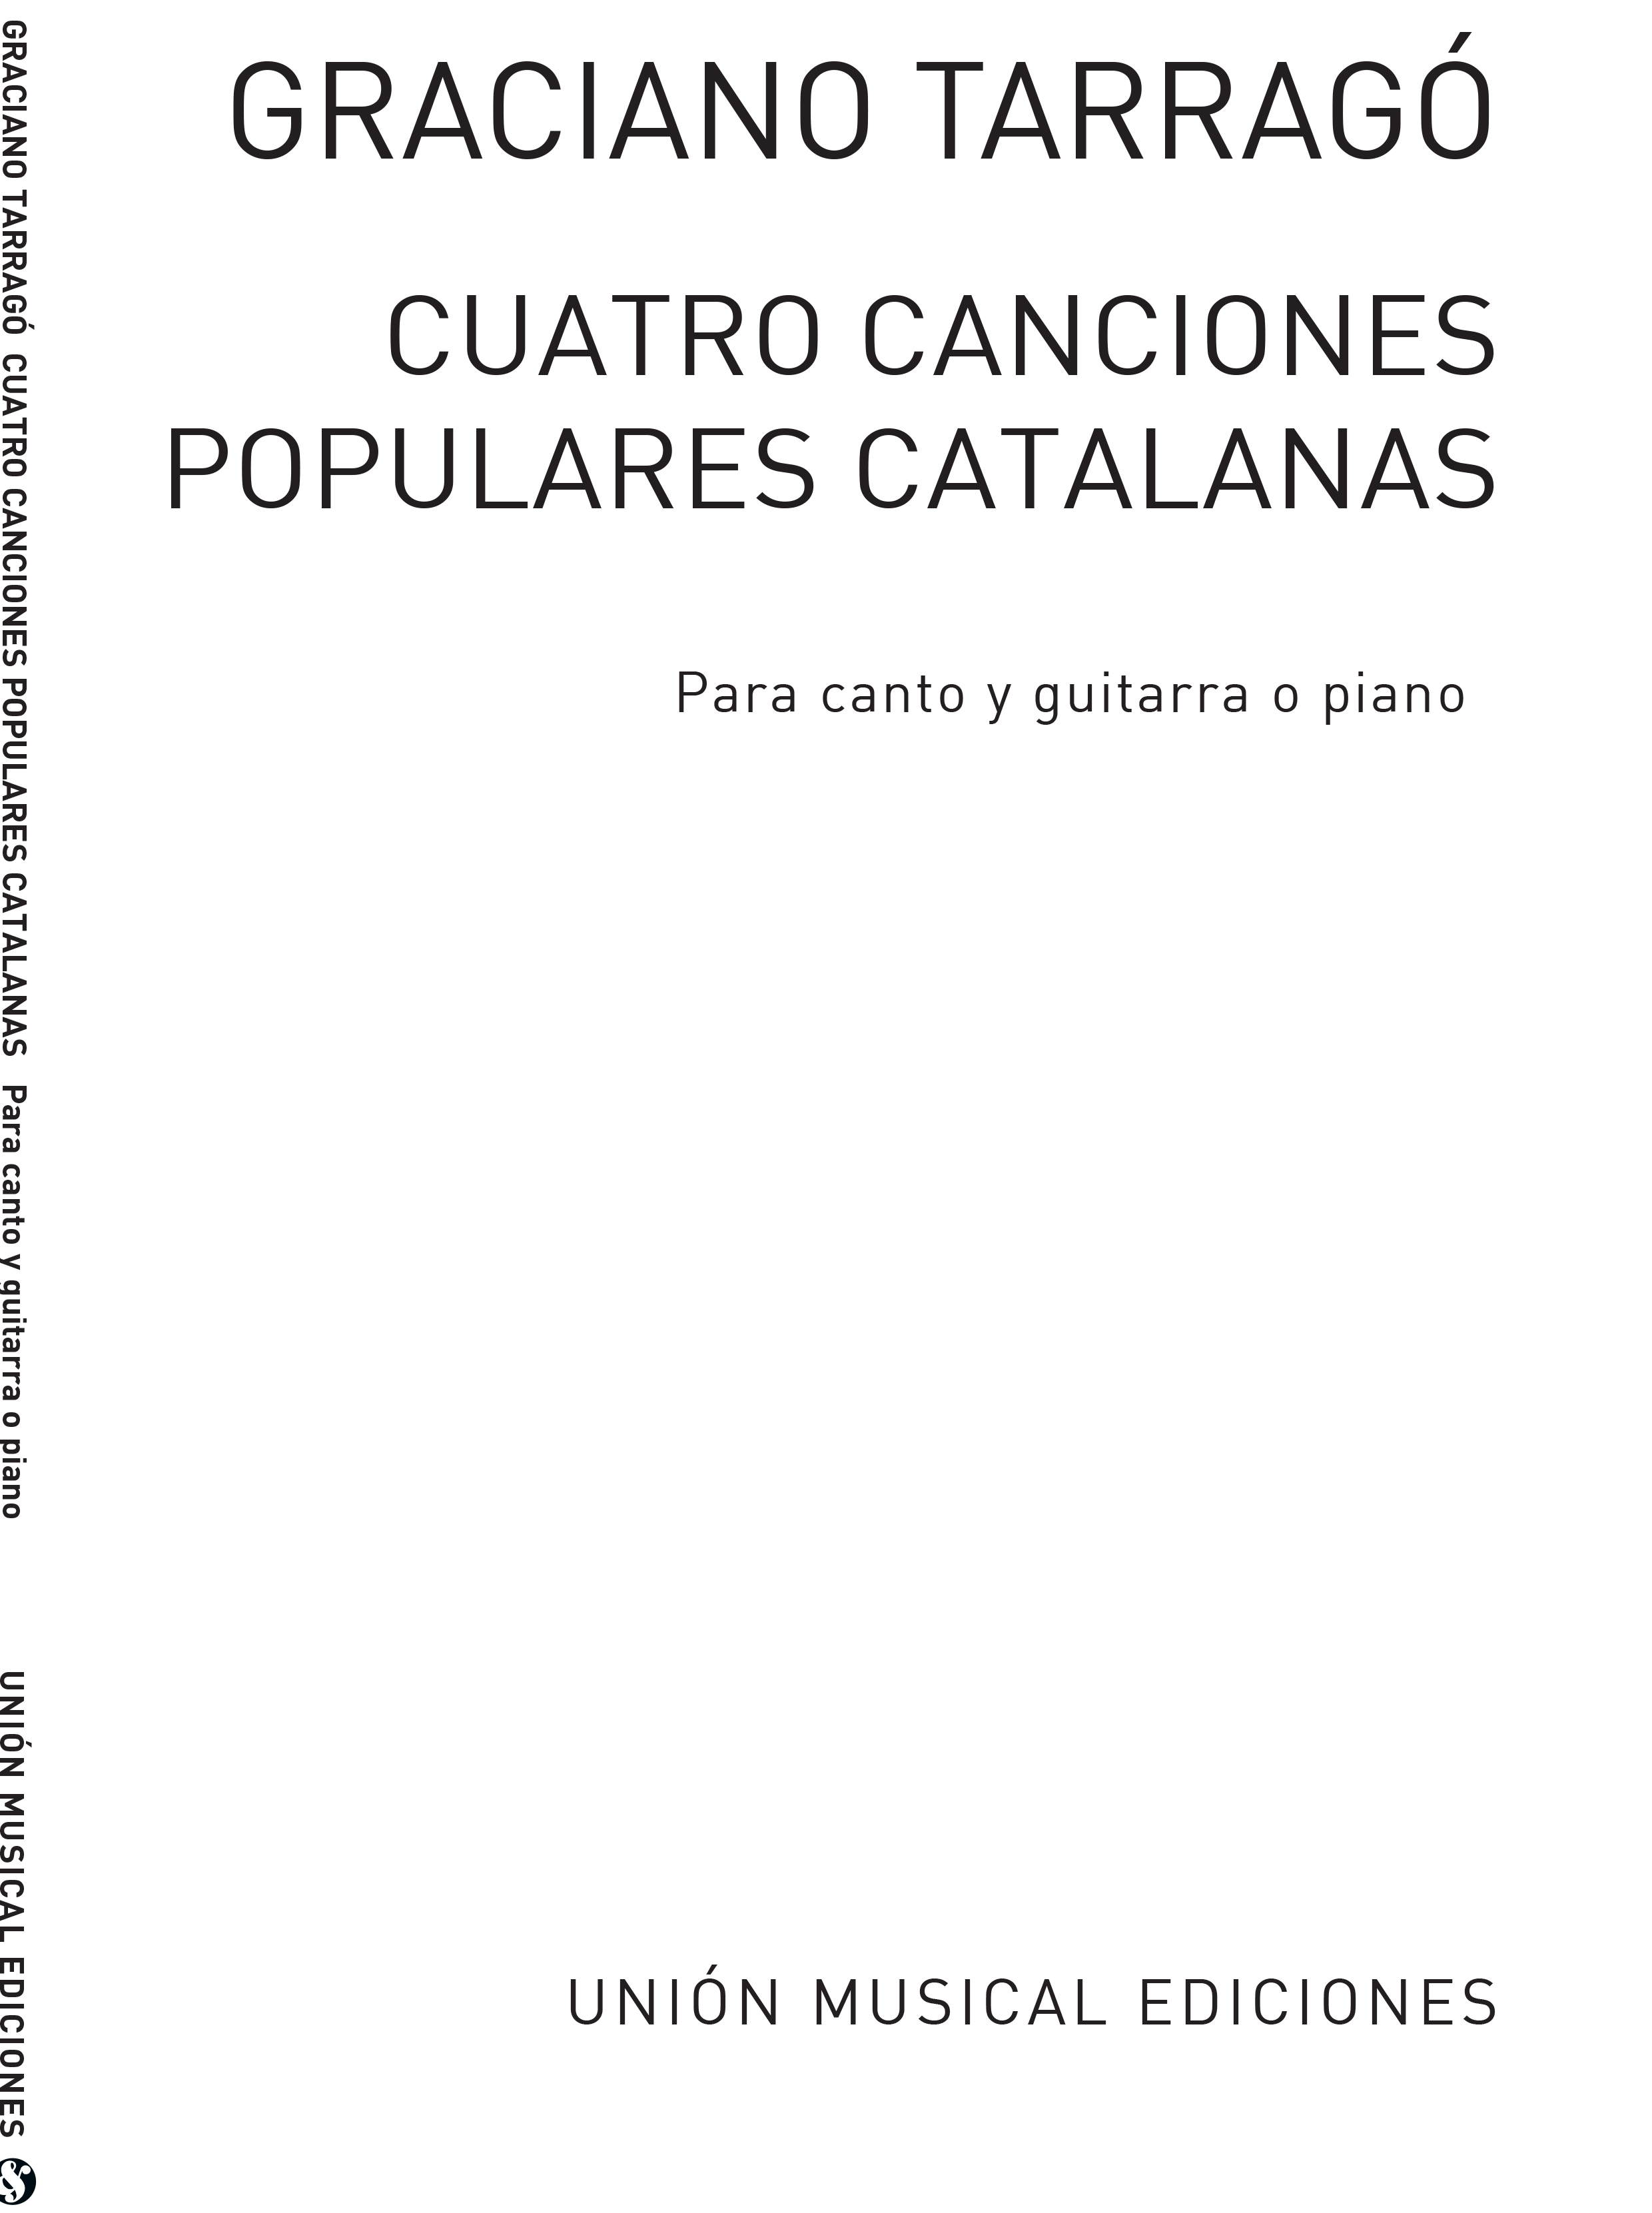 Graciano Tarragó: Cuatro Canciones Populares Catalanas: Piano  Vocal  Guitar: